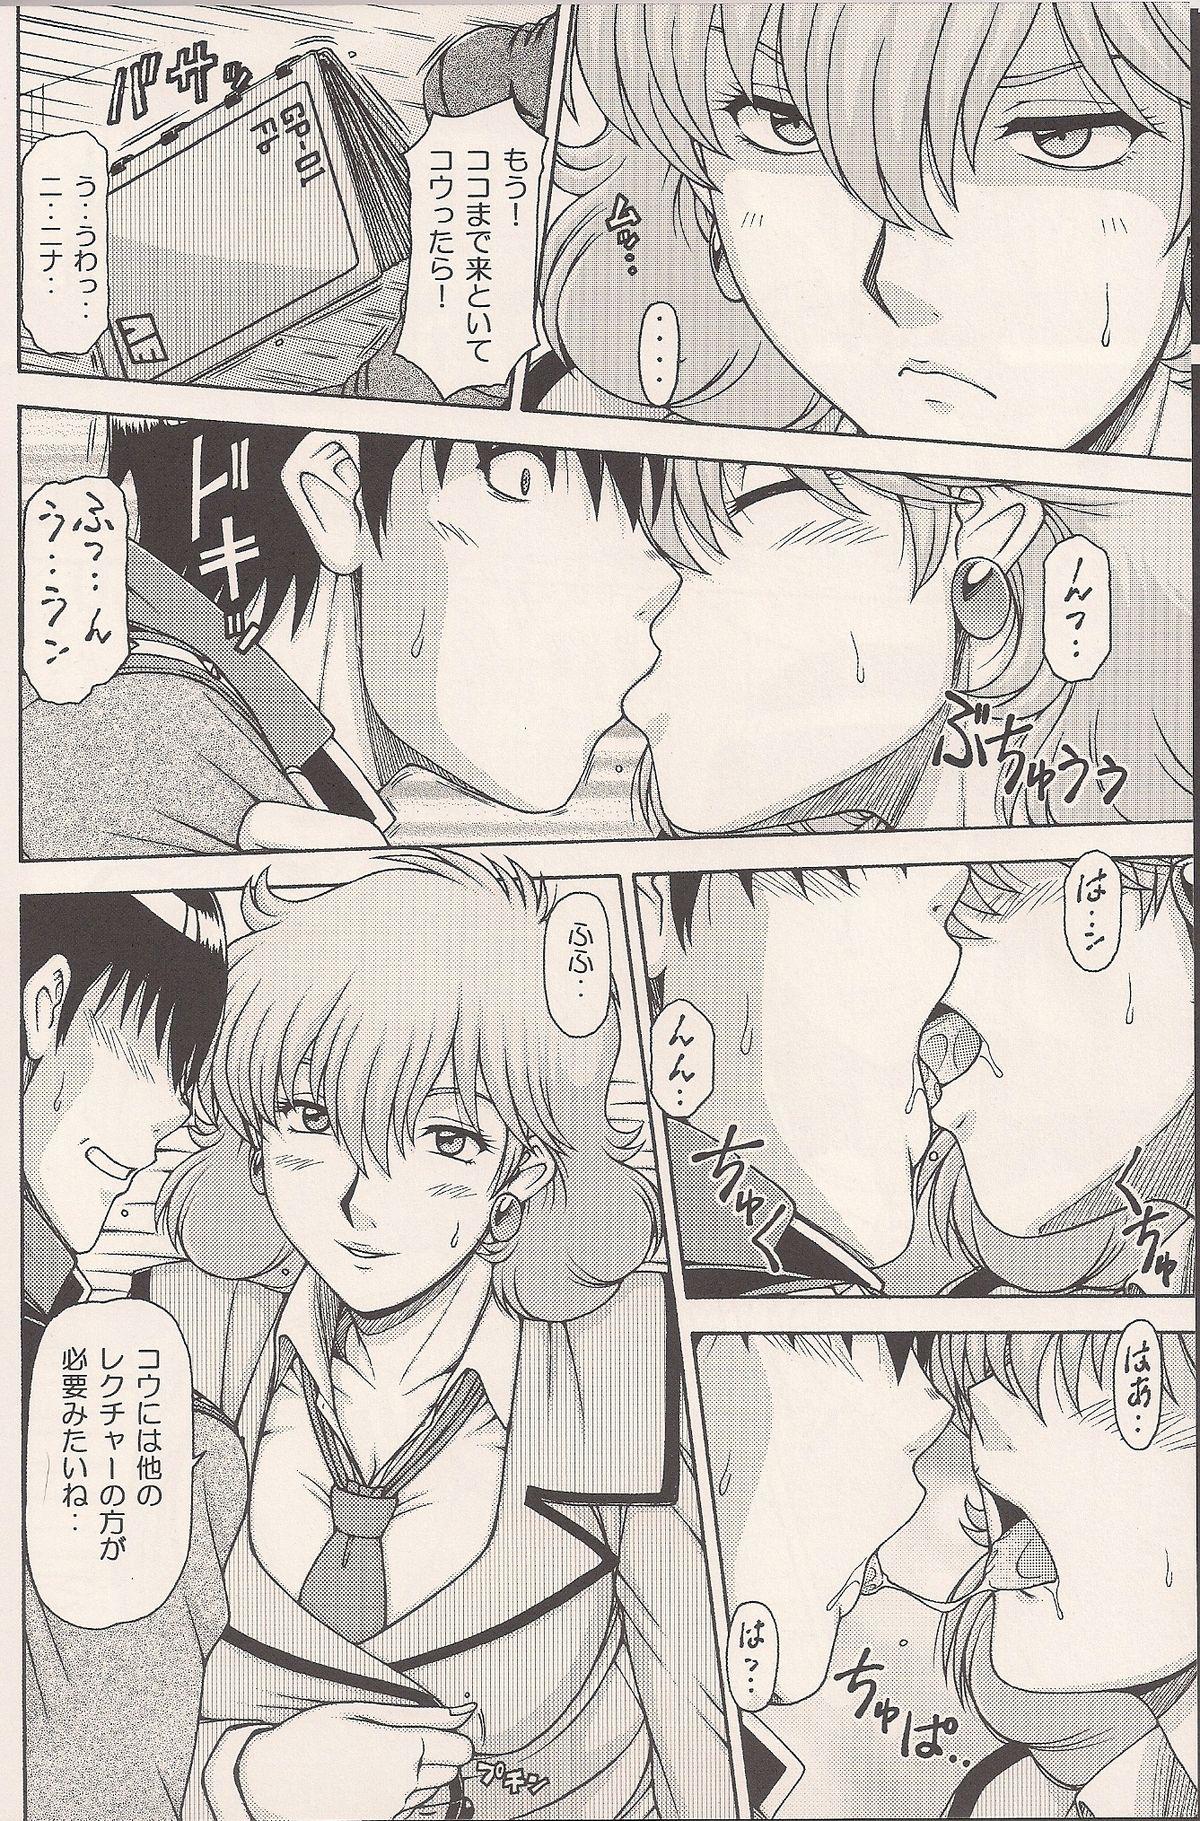 Cheat RED MUFFLER 0083 - Gundam Gundam 0083 Teensnow - Page 5